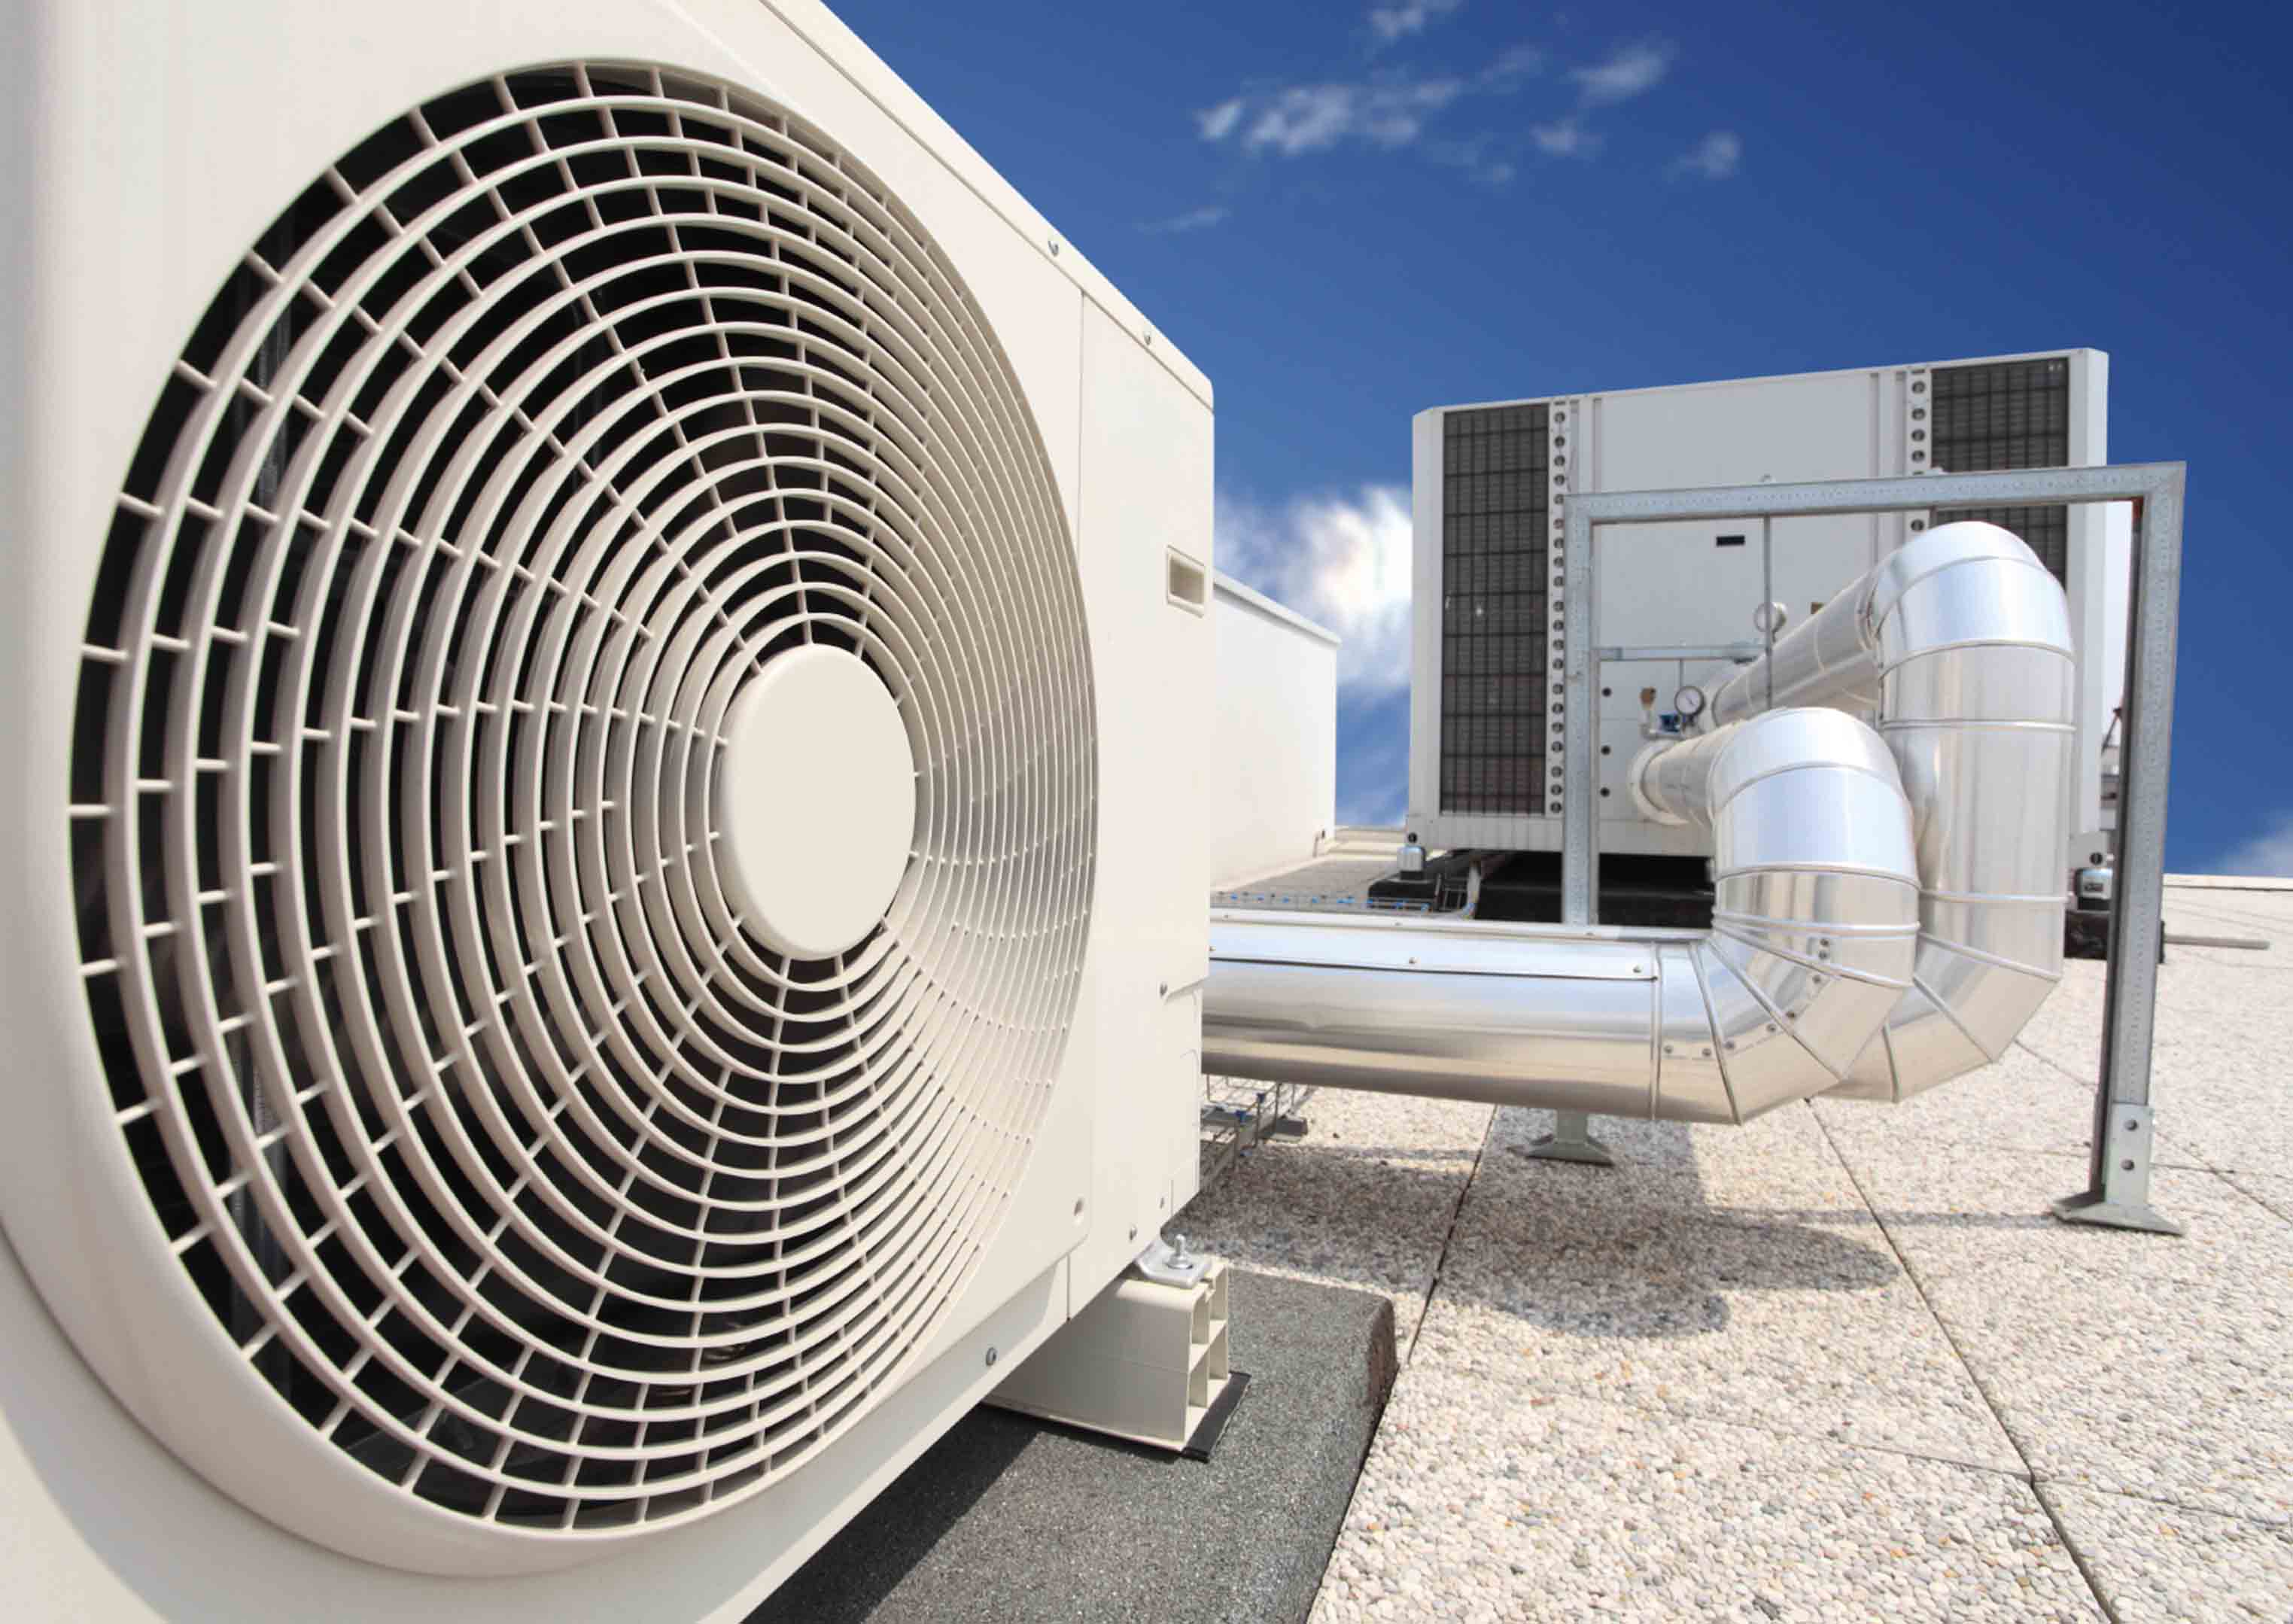 Отопительная вентиляция. HVAC система вентиляции и кондиционирования. Система вентиляции Air Ventilation. Промышленный кондиционеры Carrier. Внешний блок приточно-вытяжной вентиляции.